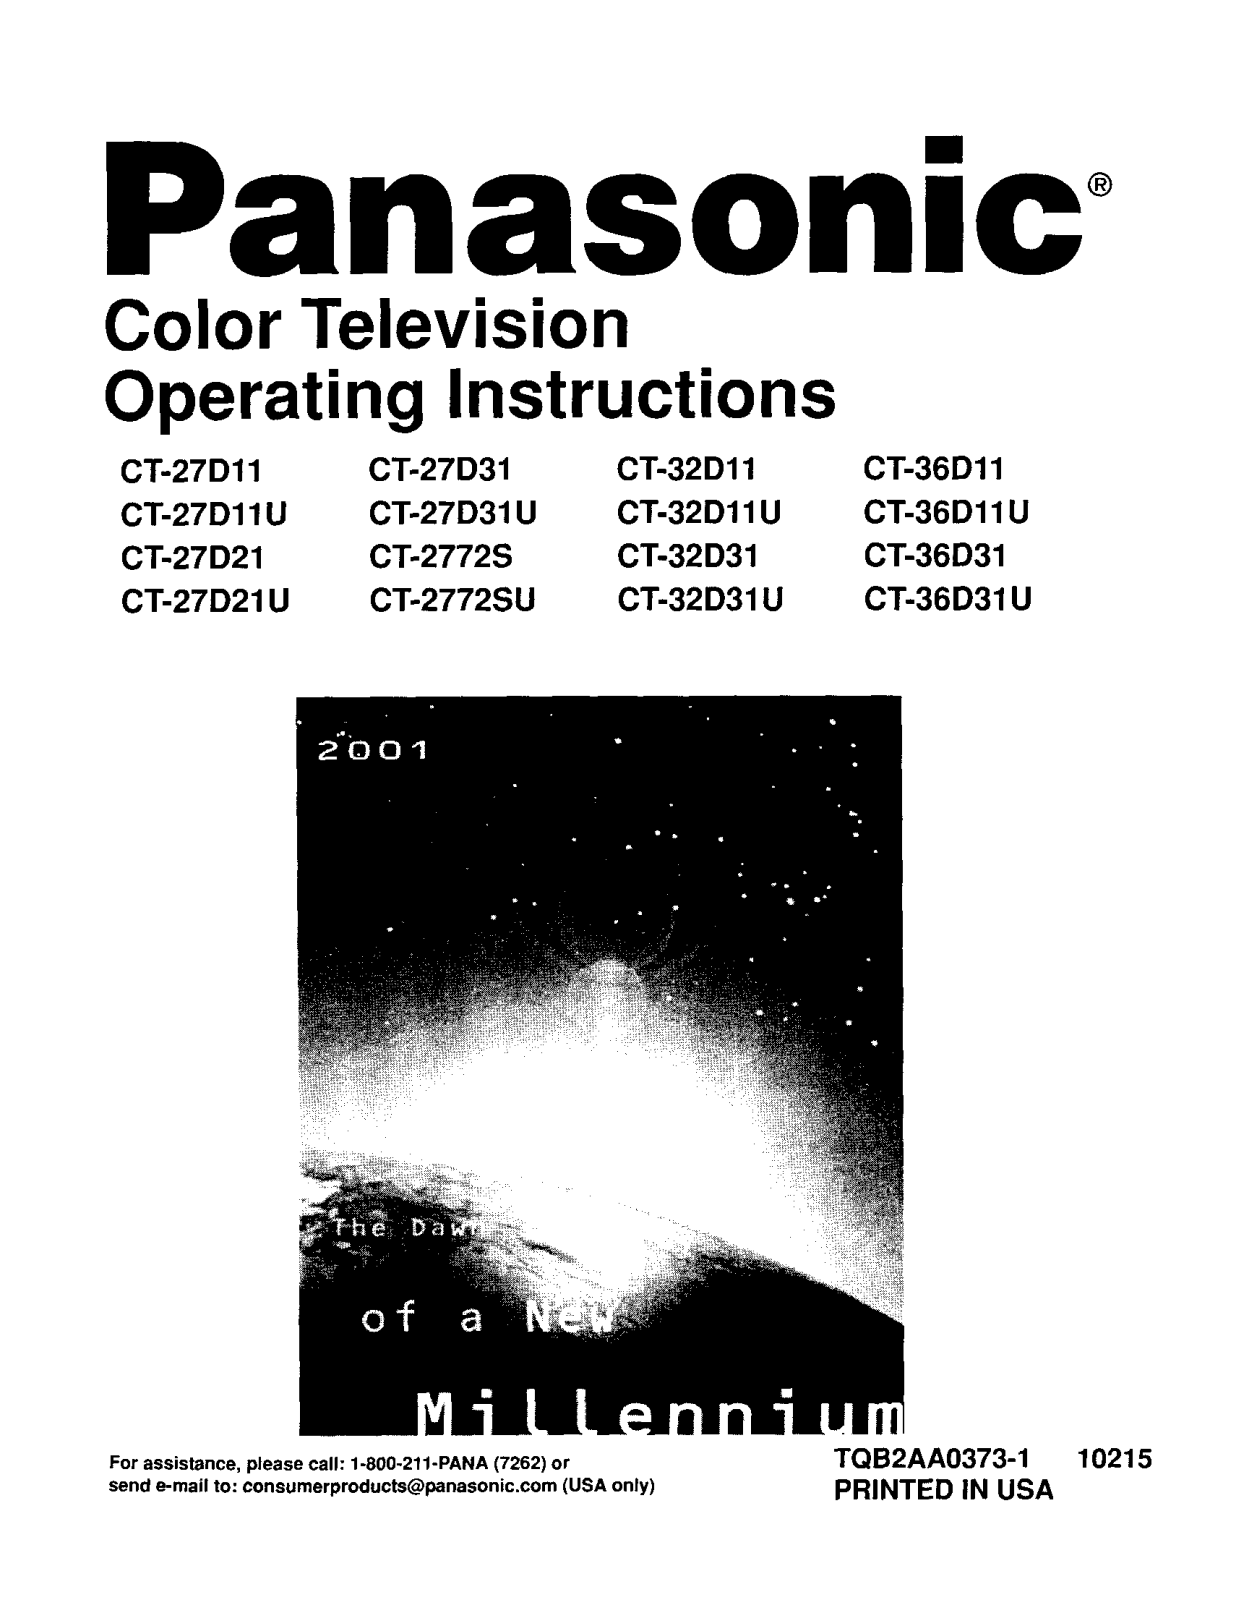 Panasonic CT-36D31UE, CT-36D11UE, CT-32D31UE, CT-32D11UE, CT-27D21UE Owner’s Manual